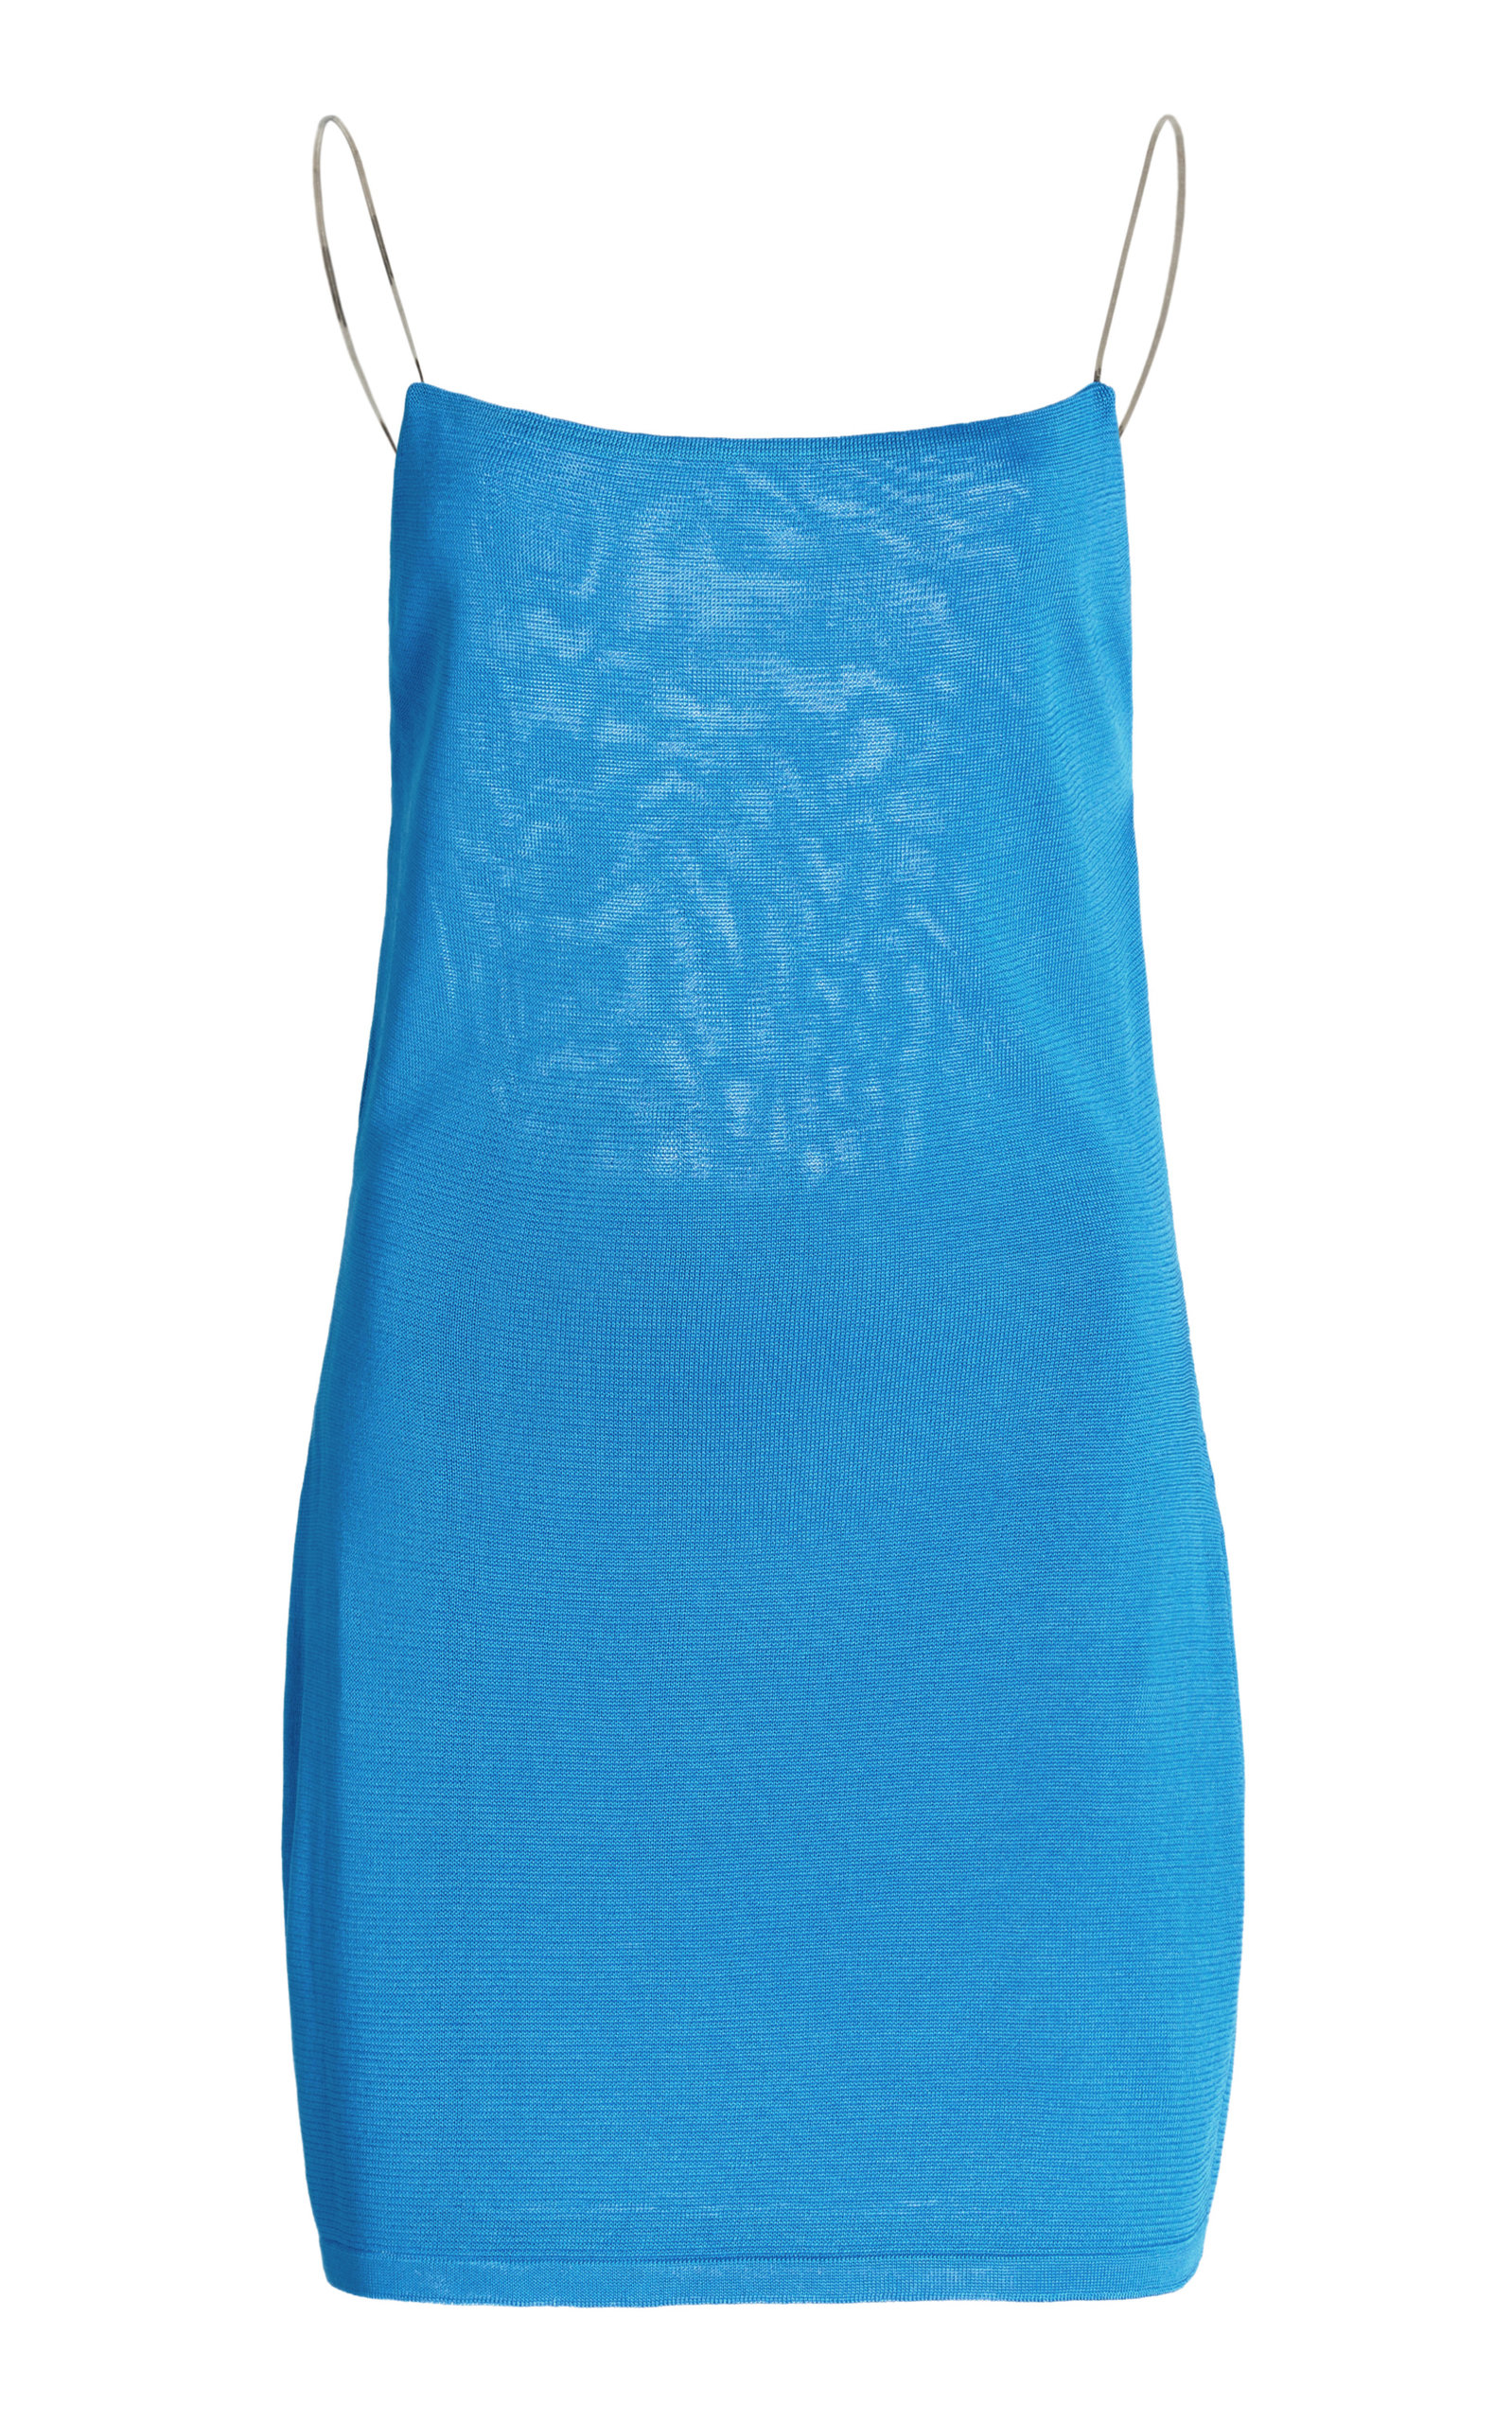 Rib-knit Slip Dress - Bright blue - Ladies